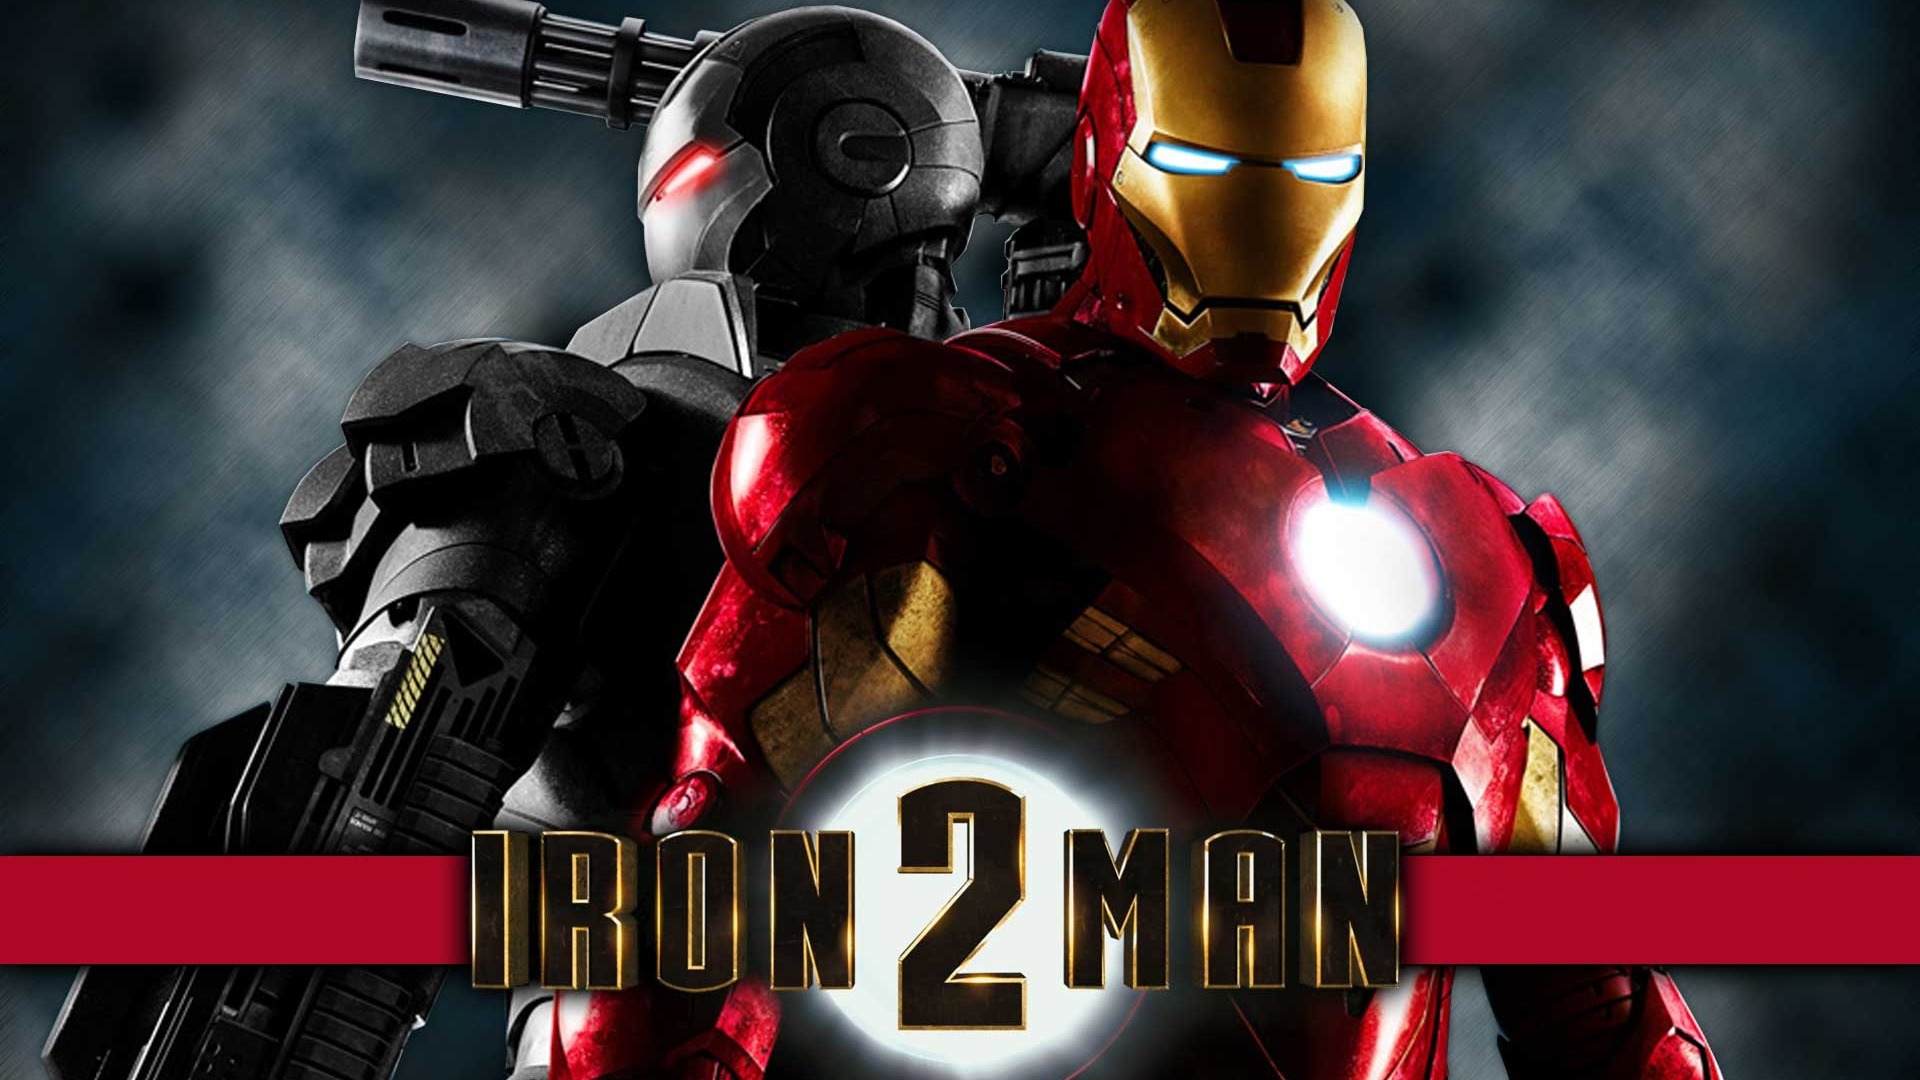 Iron Man 2 鋼鐵俠2 高清壁紙 #1 - 1920x1080